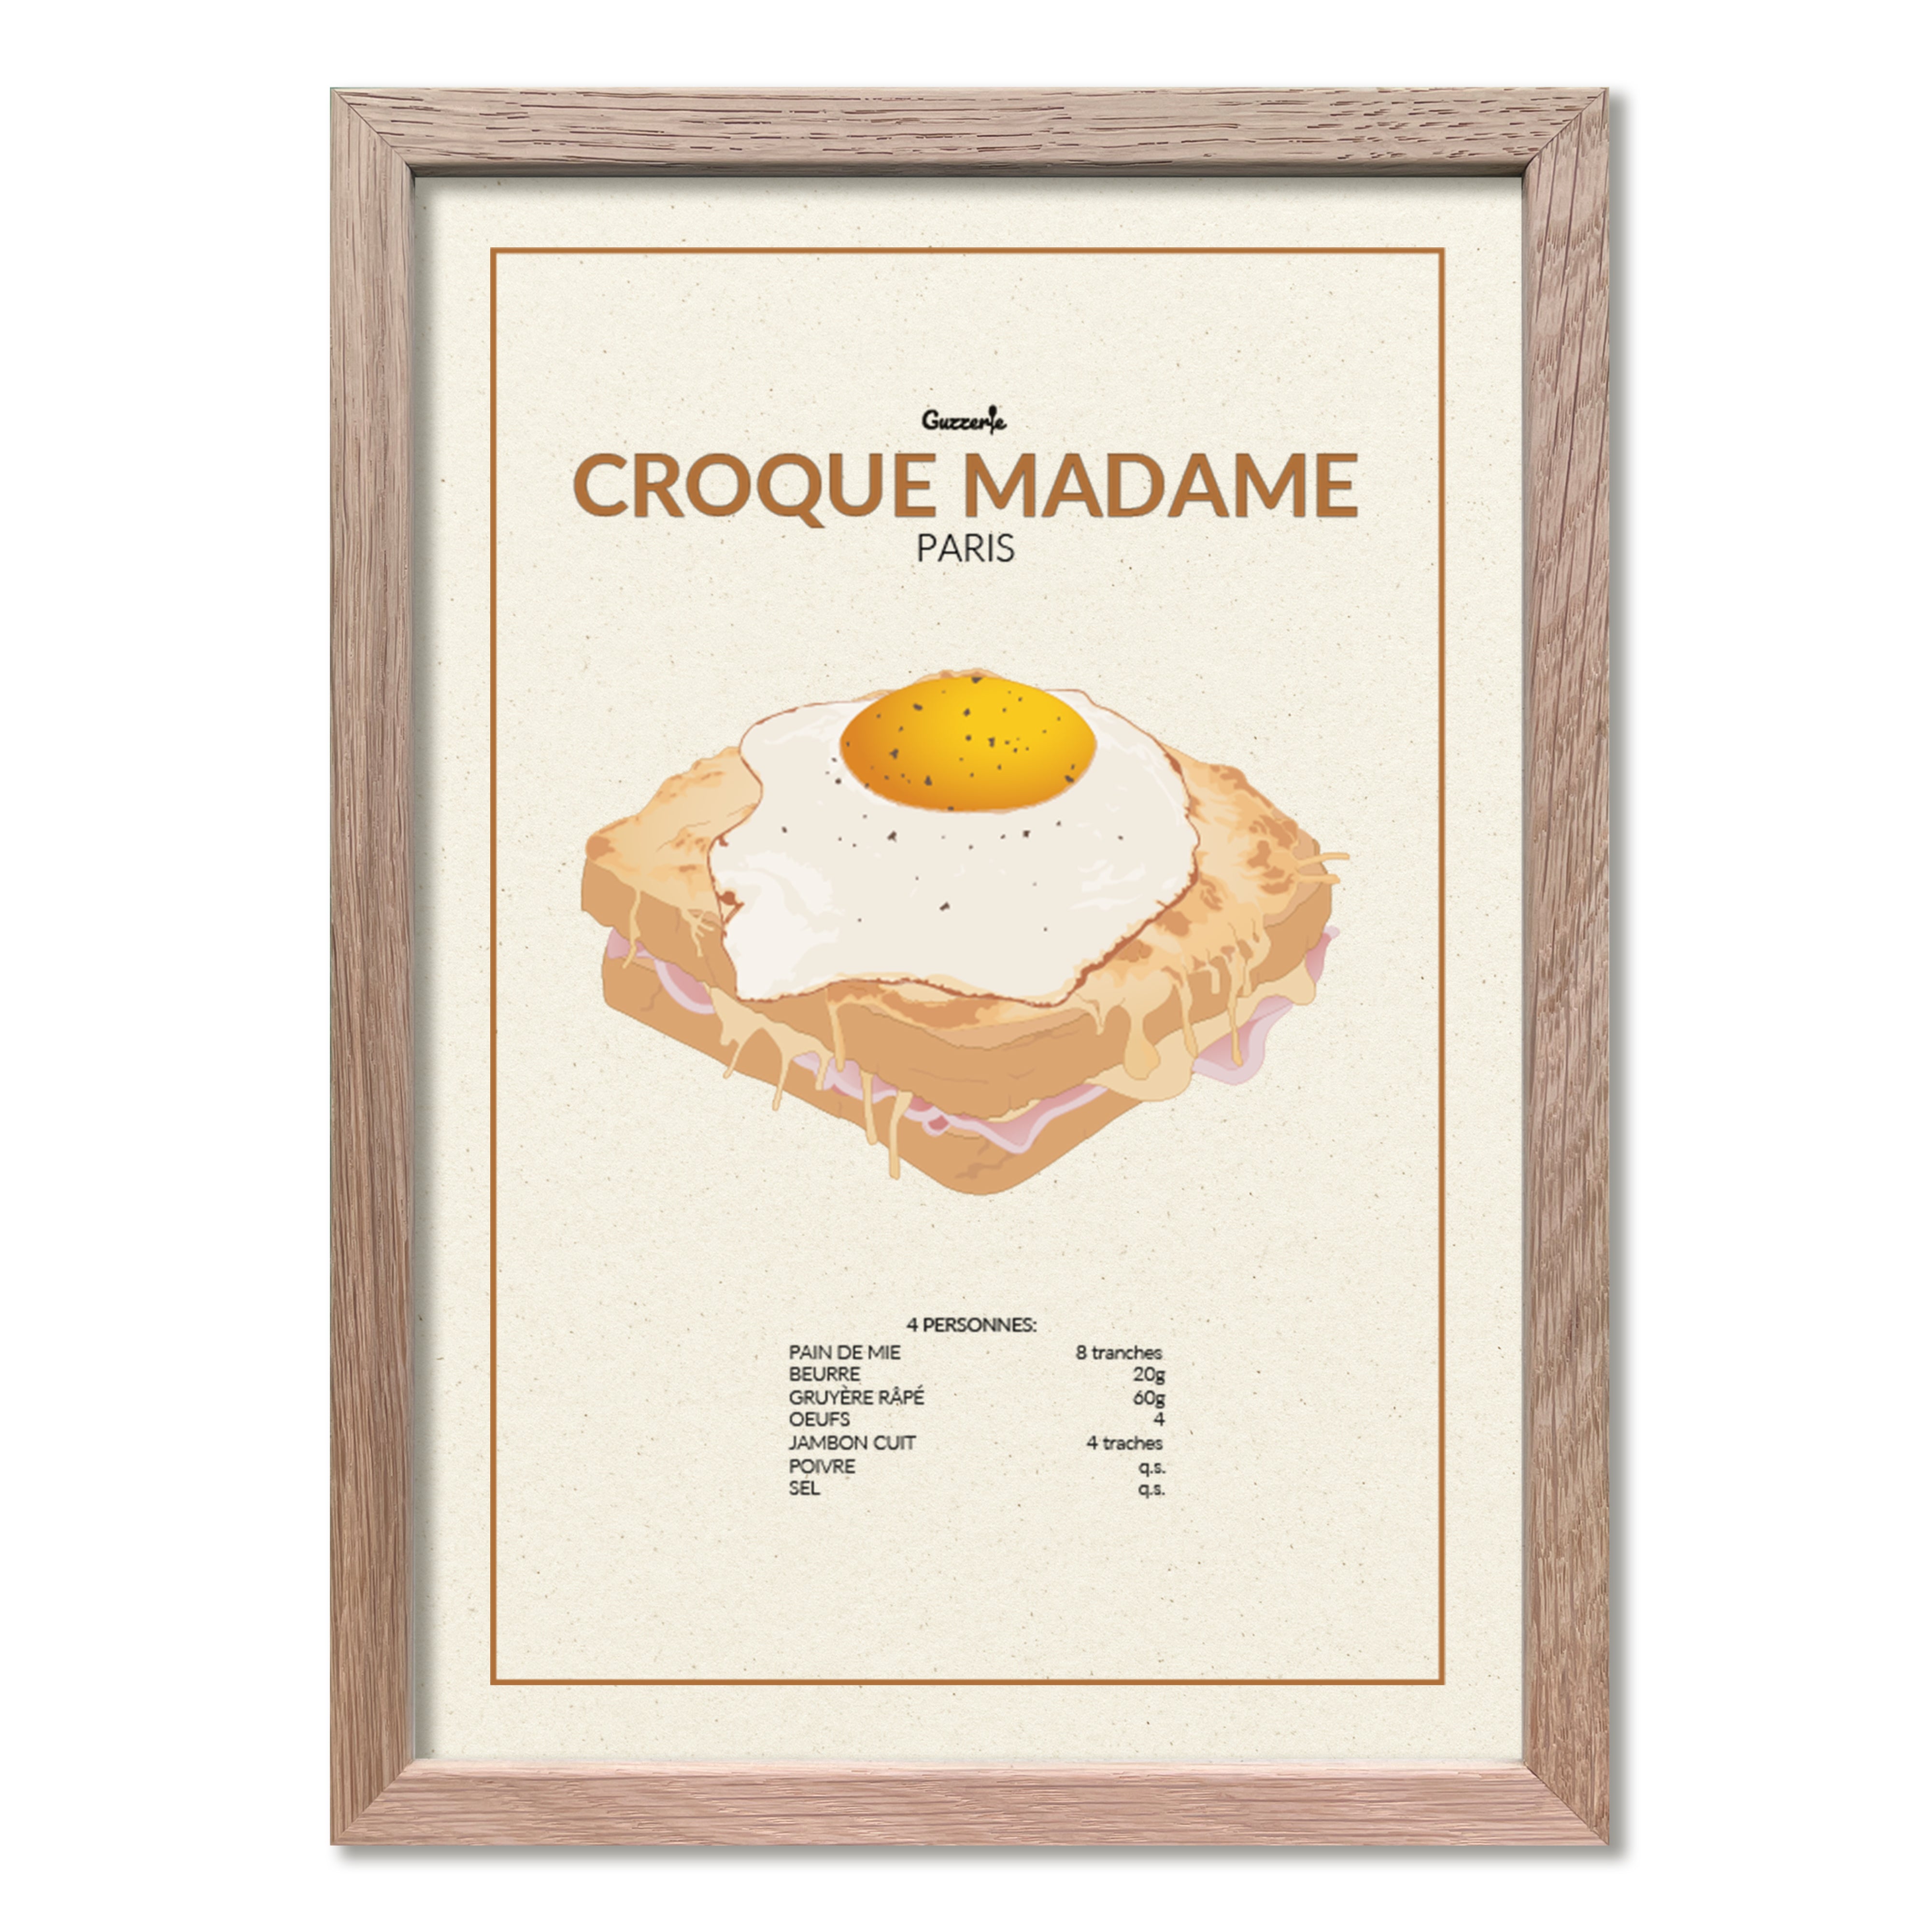 Croque Madame